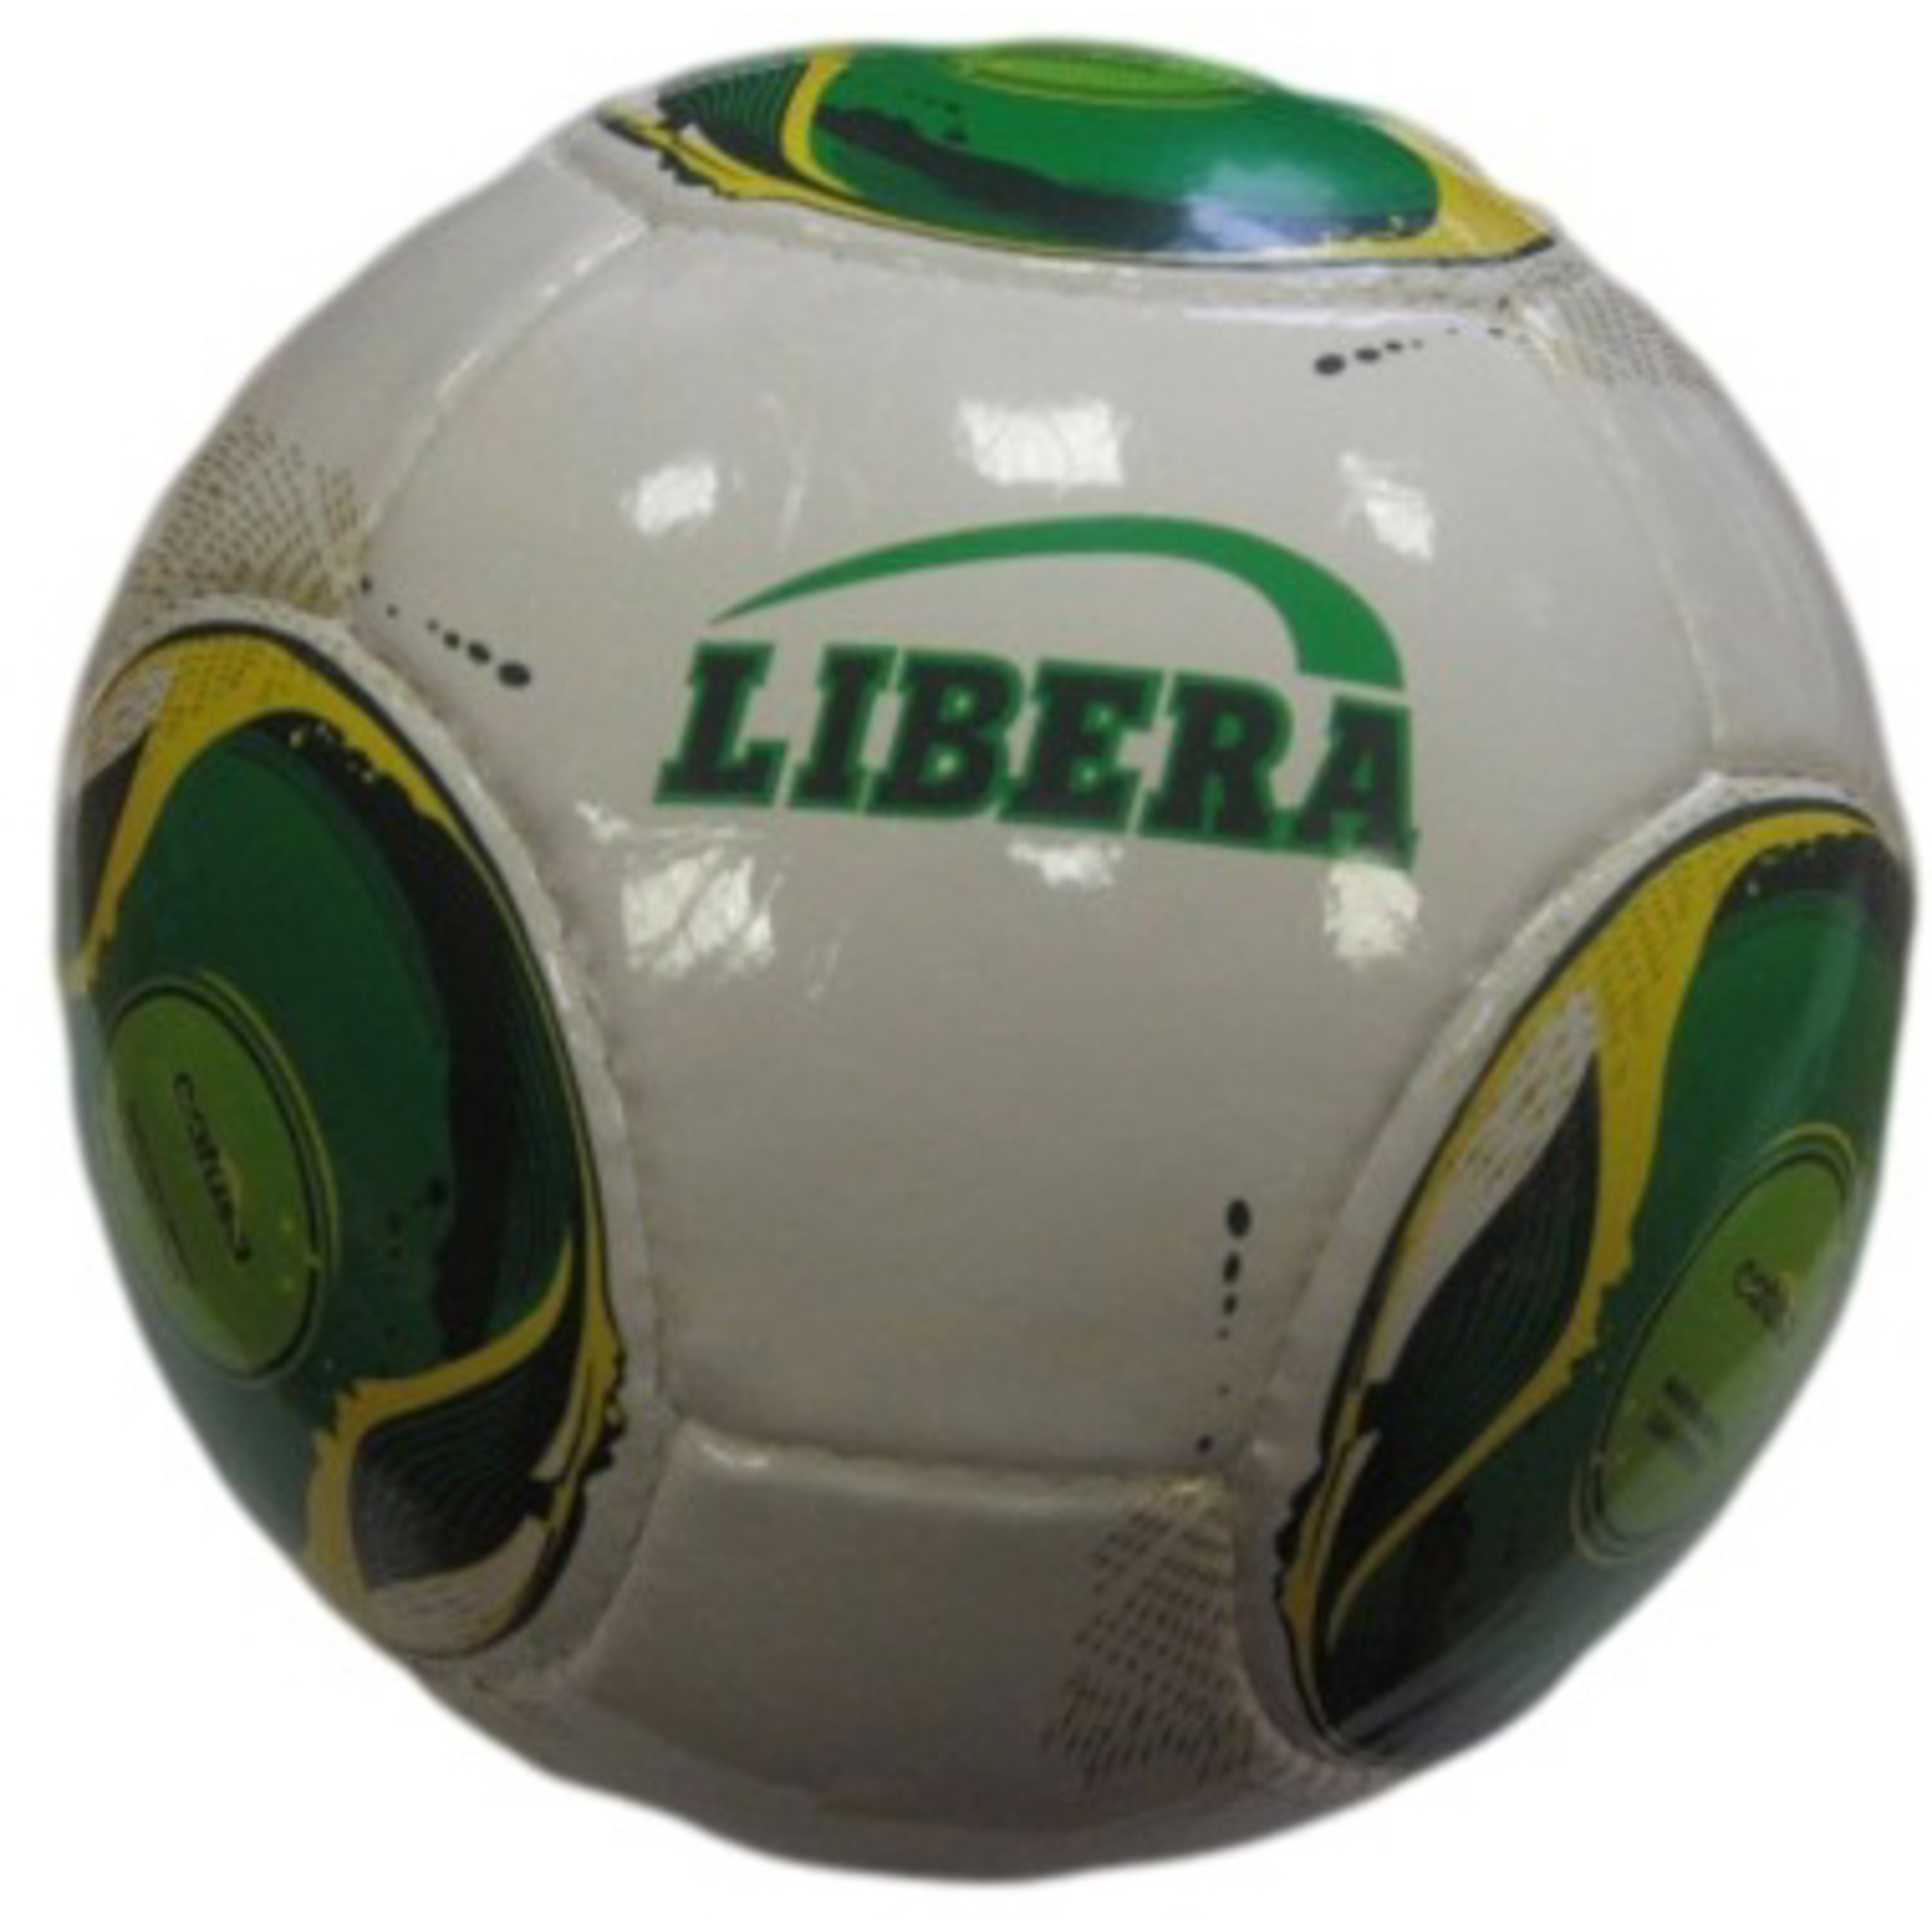 фото Мяч футбольный №5 libera